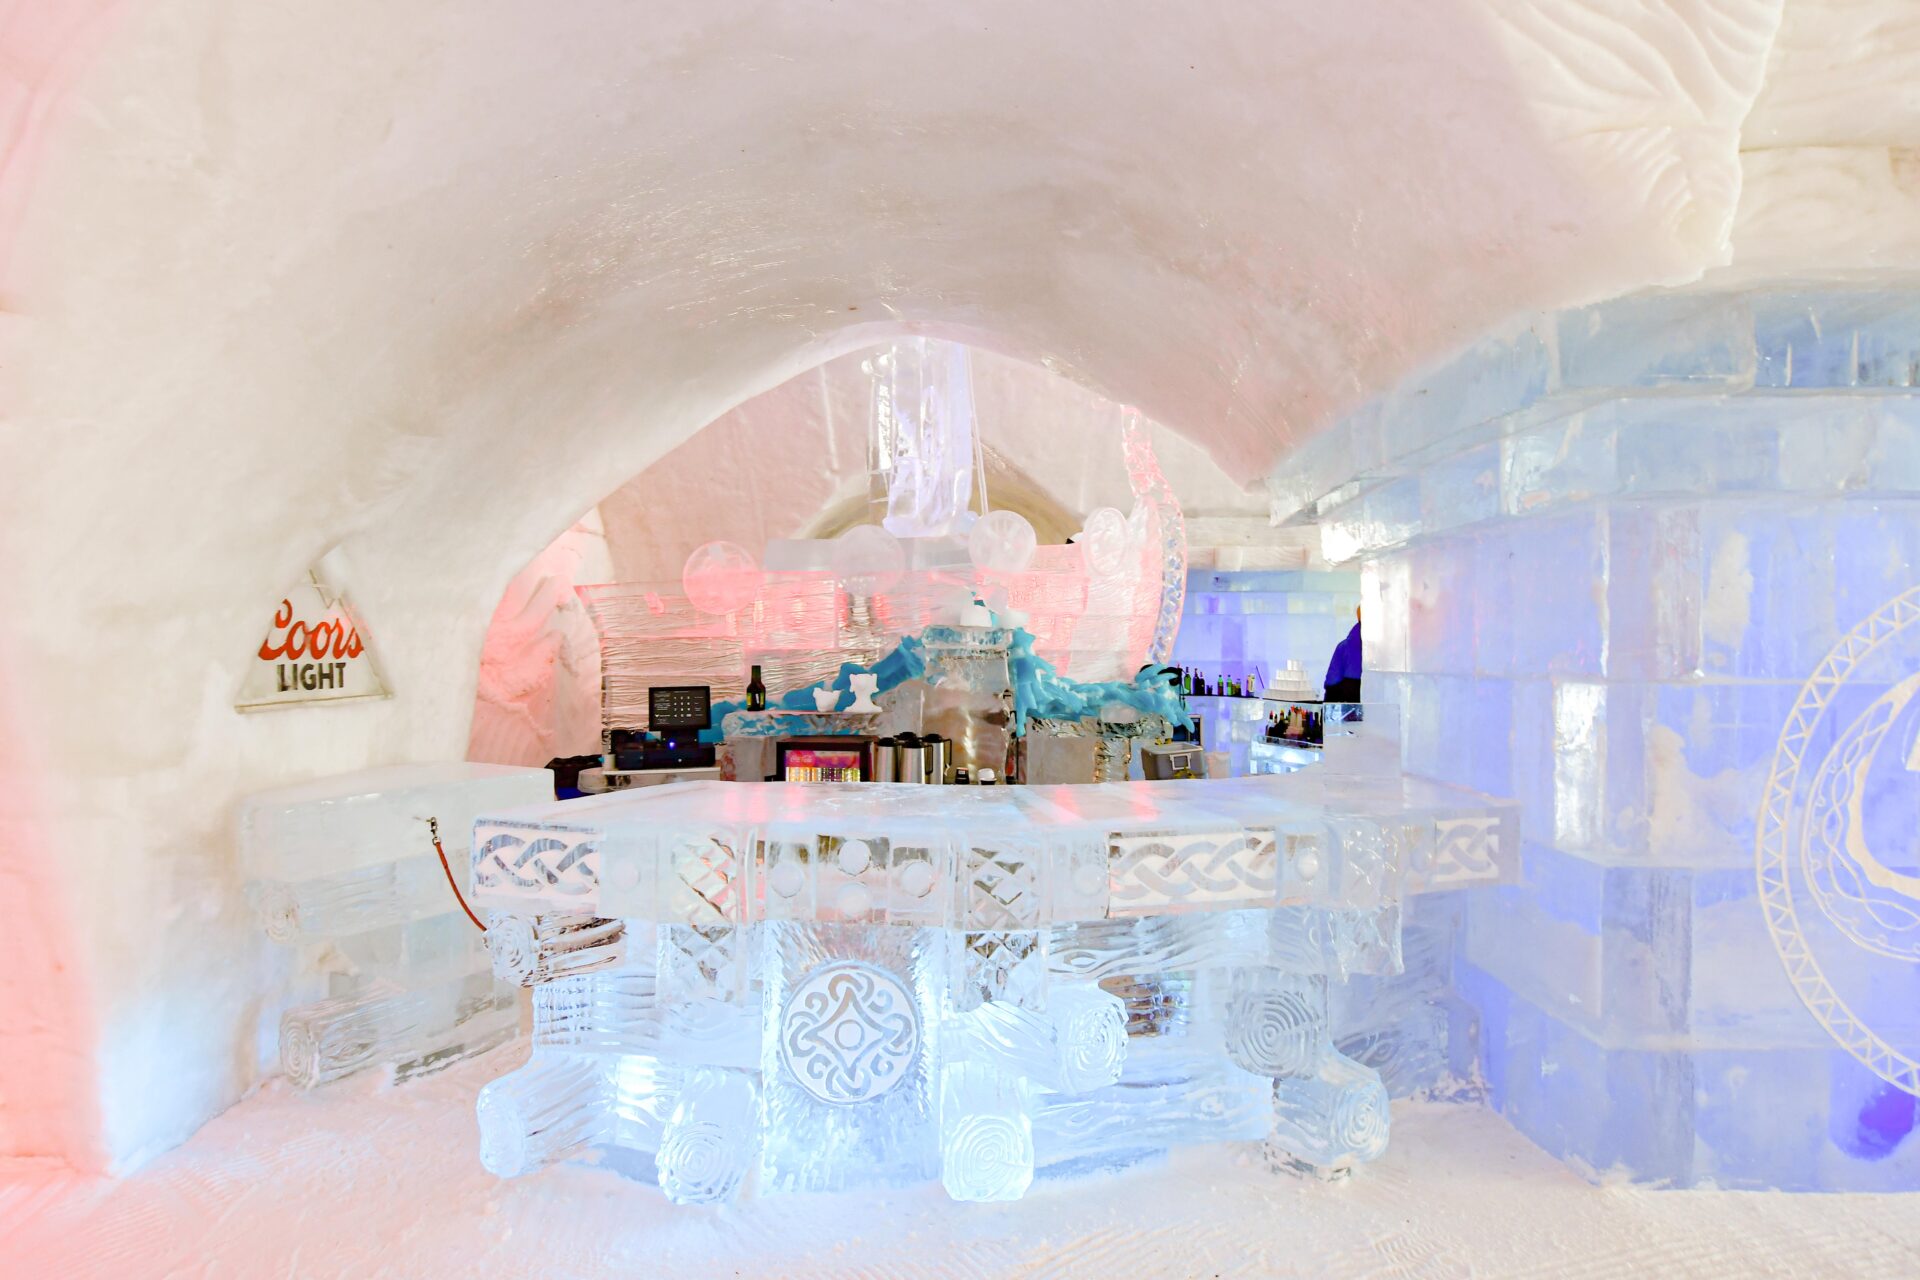 a detailed ice bar sculpture inside Hôtel de Glace